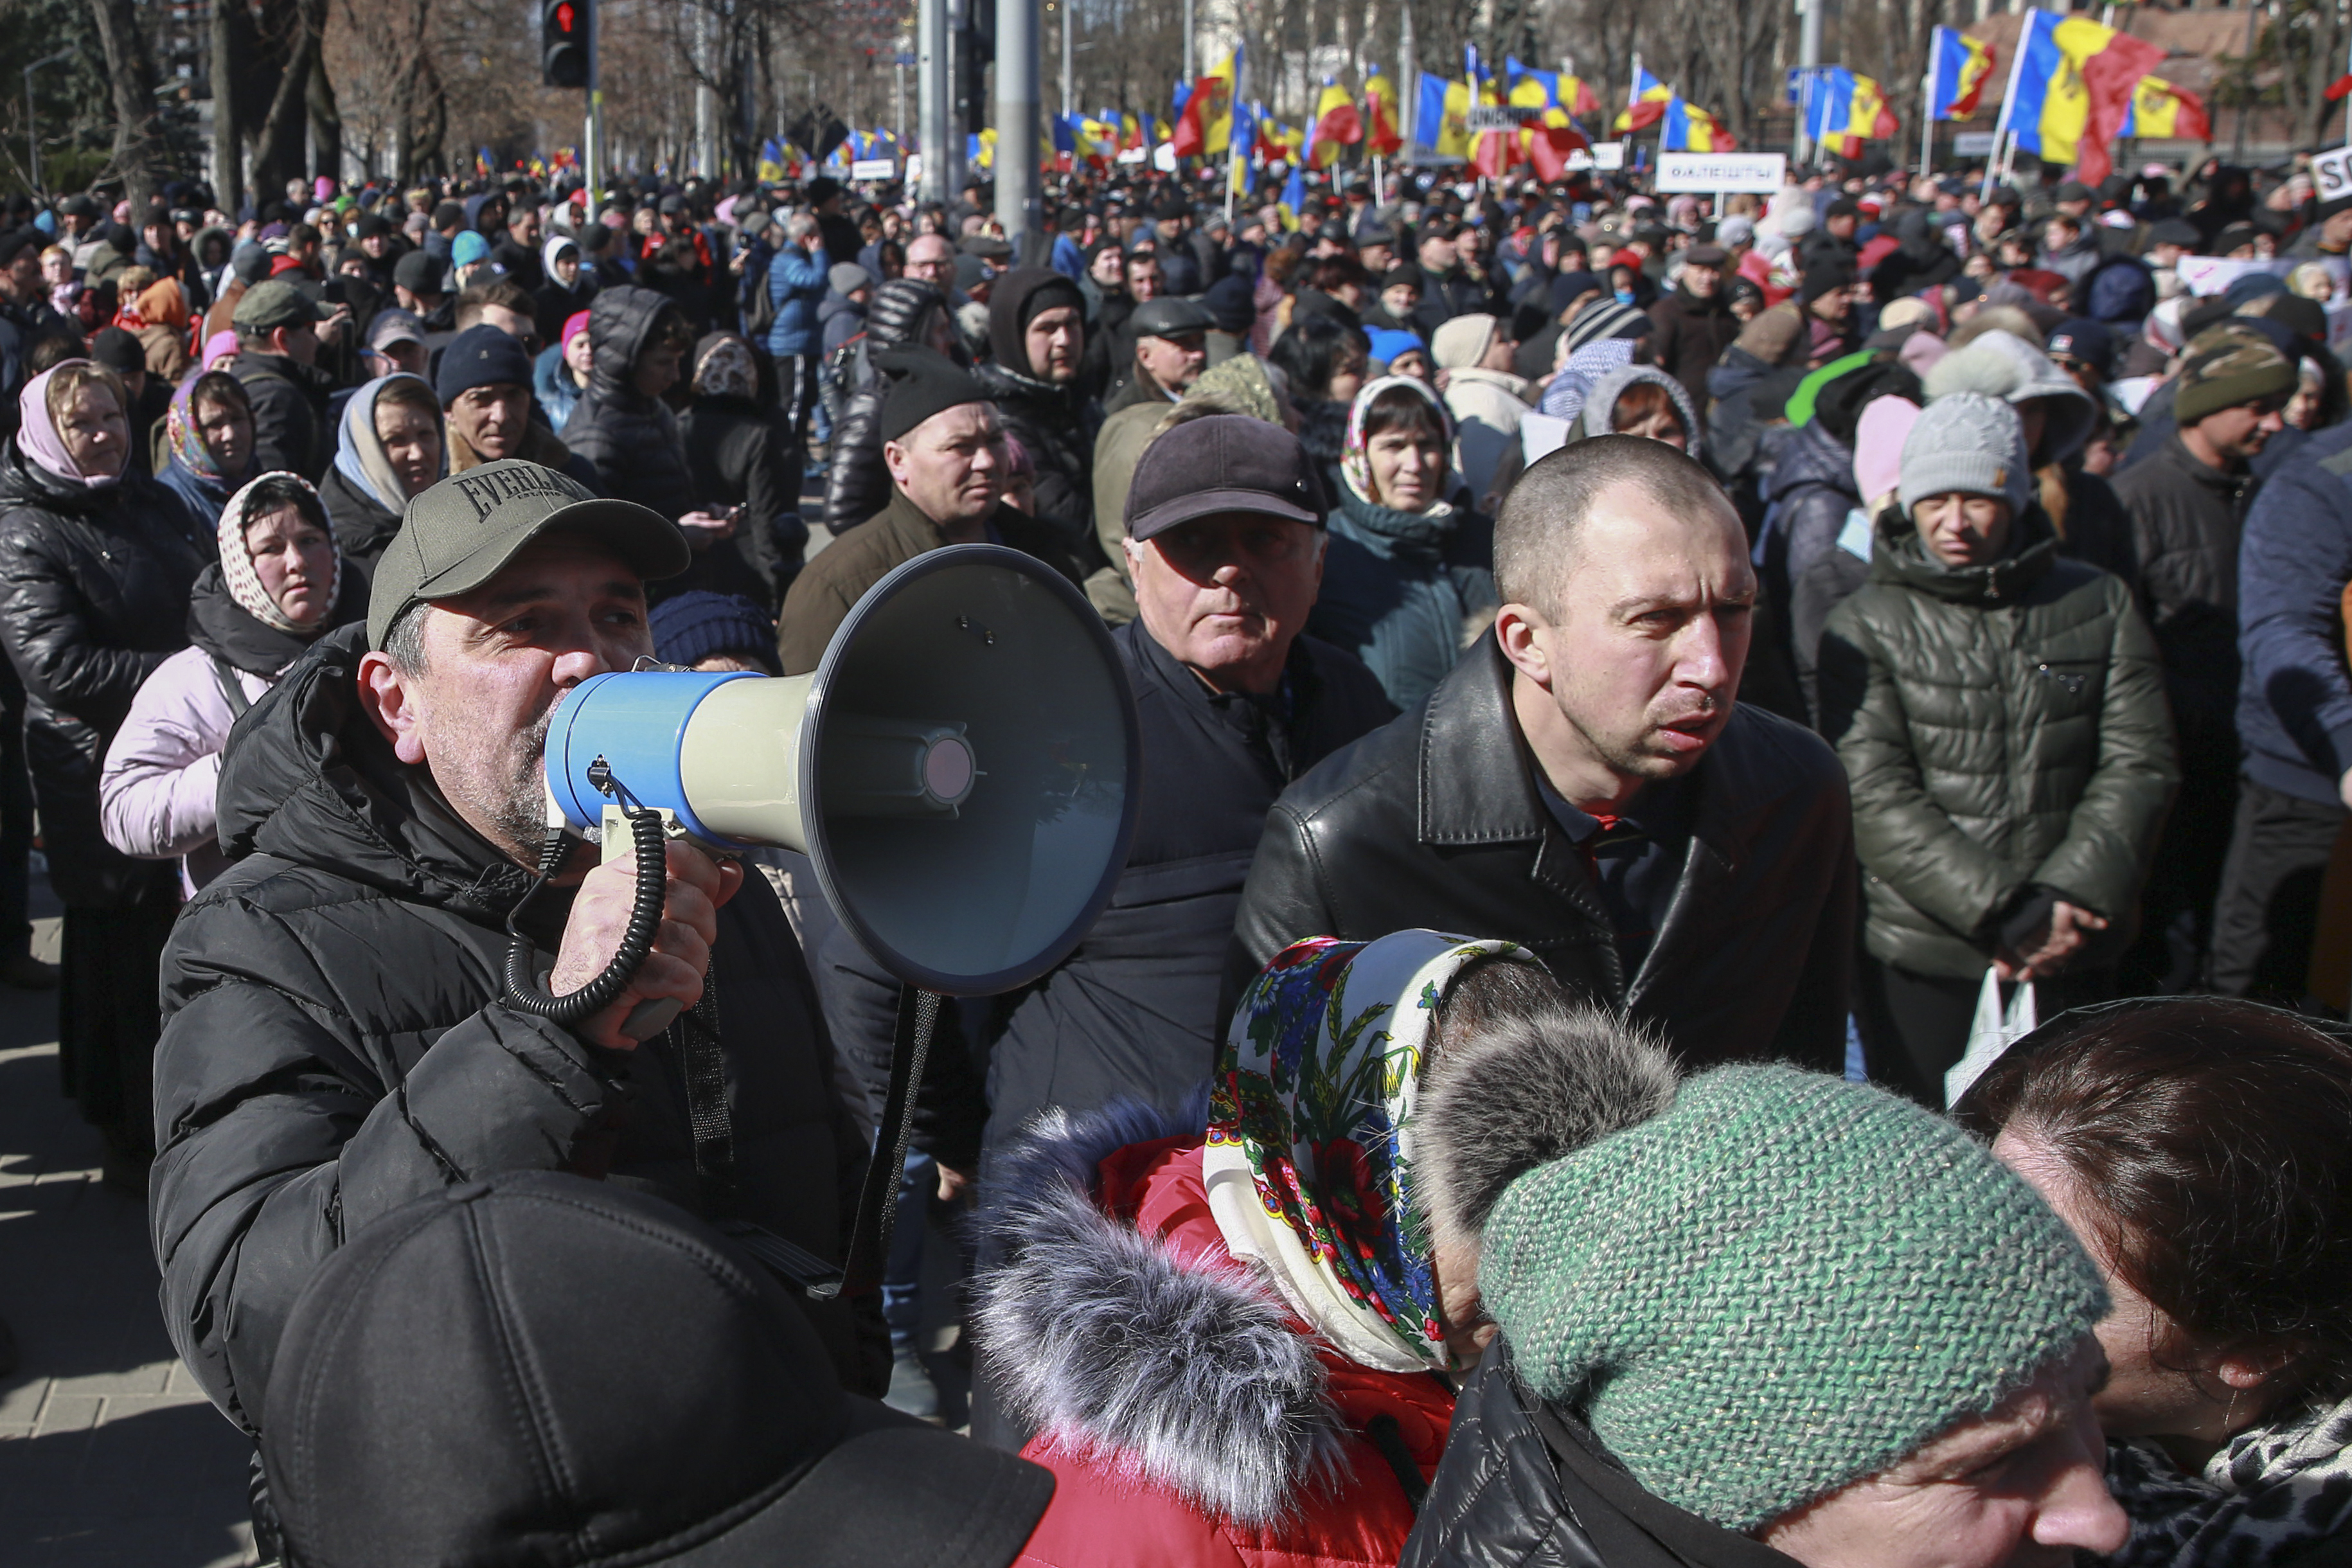 El pasado mes de febrero, Sandu acusó a Rusia de poner en marcha una “guerra híbrida” contra el país para lograr la caída del Gobierno mediante protestas contra las autoridades, unas acusaciones que fueron criticadas desde Moscú. (AP)